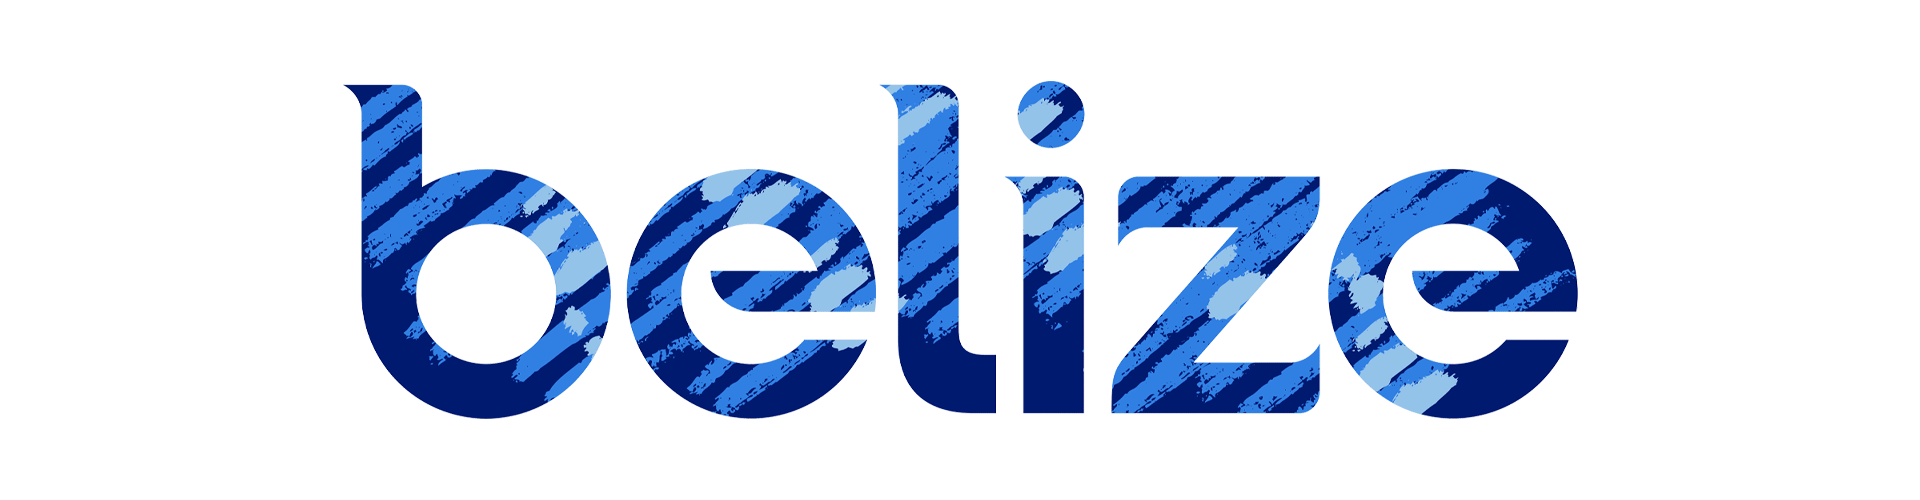 CV_Belize_Logo_Patterns